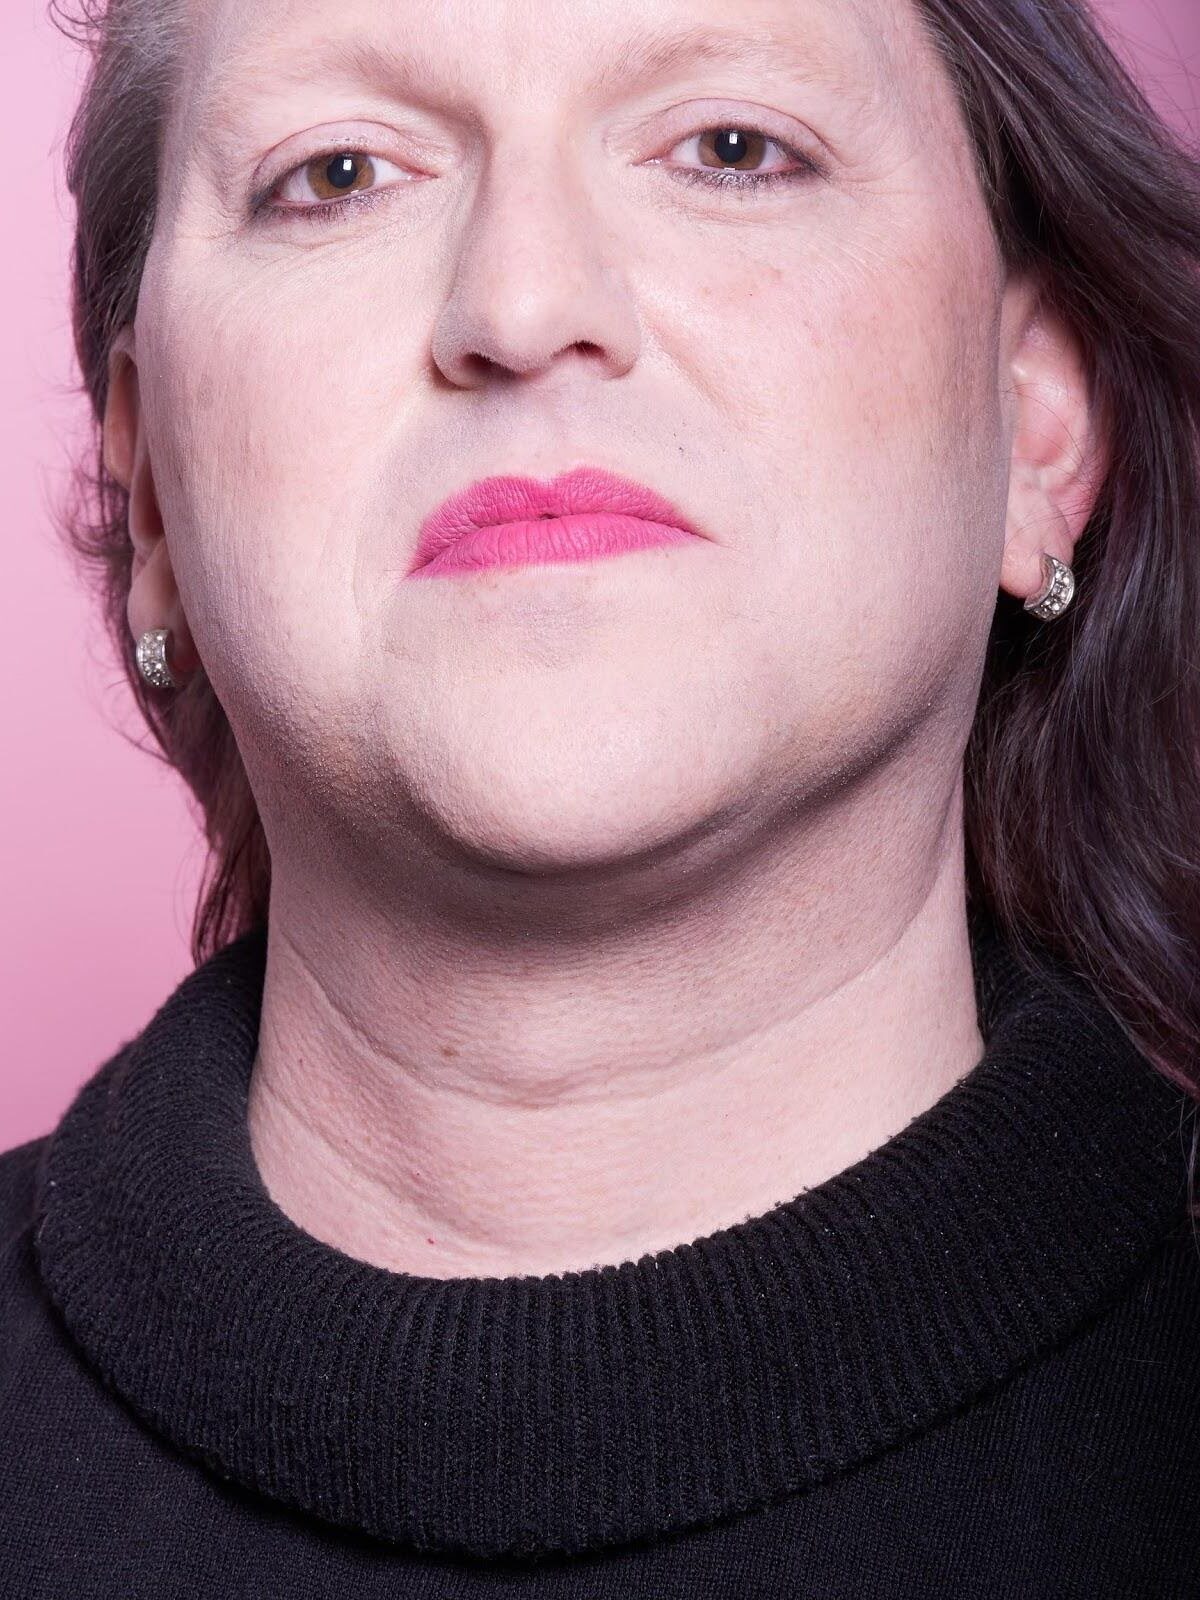 MTF trans woman makeup